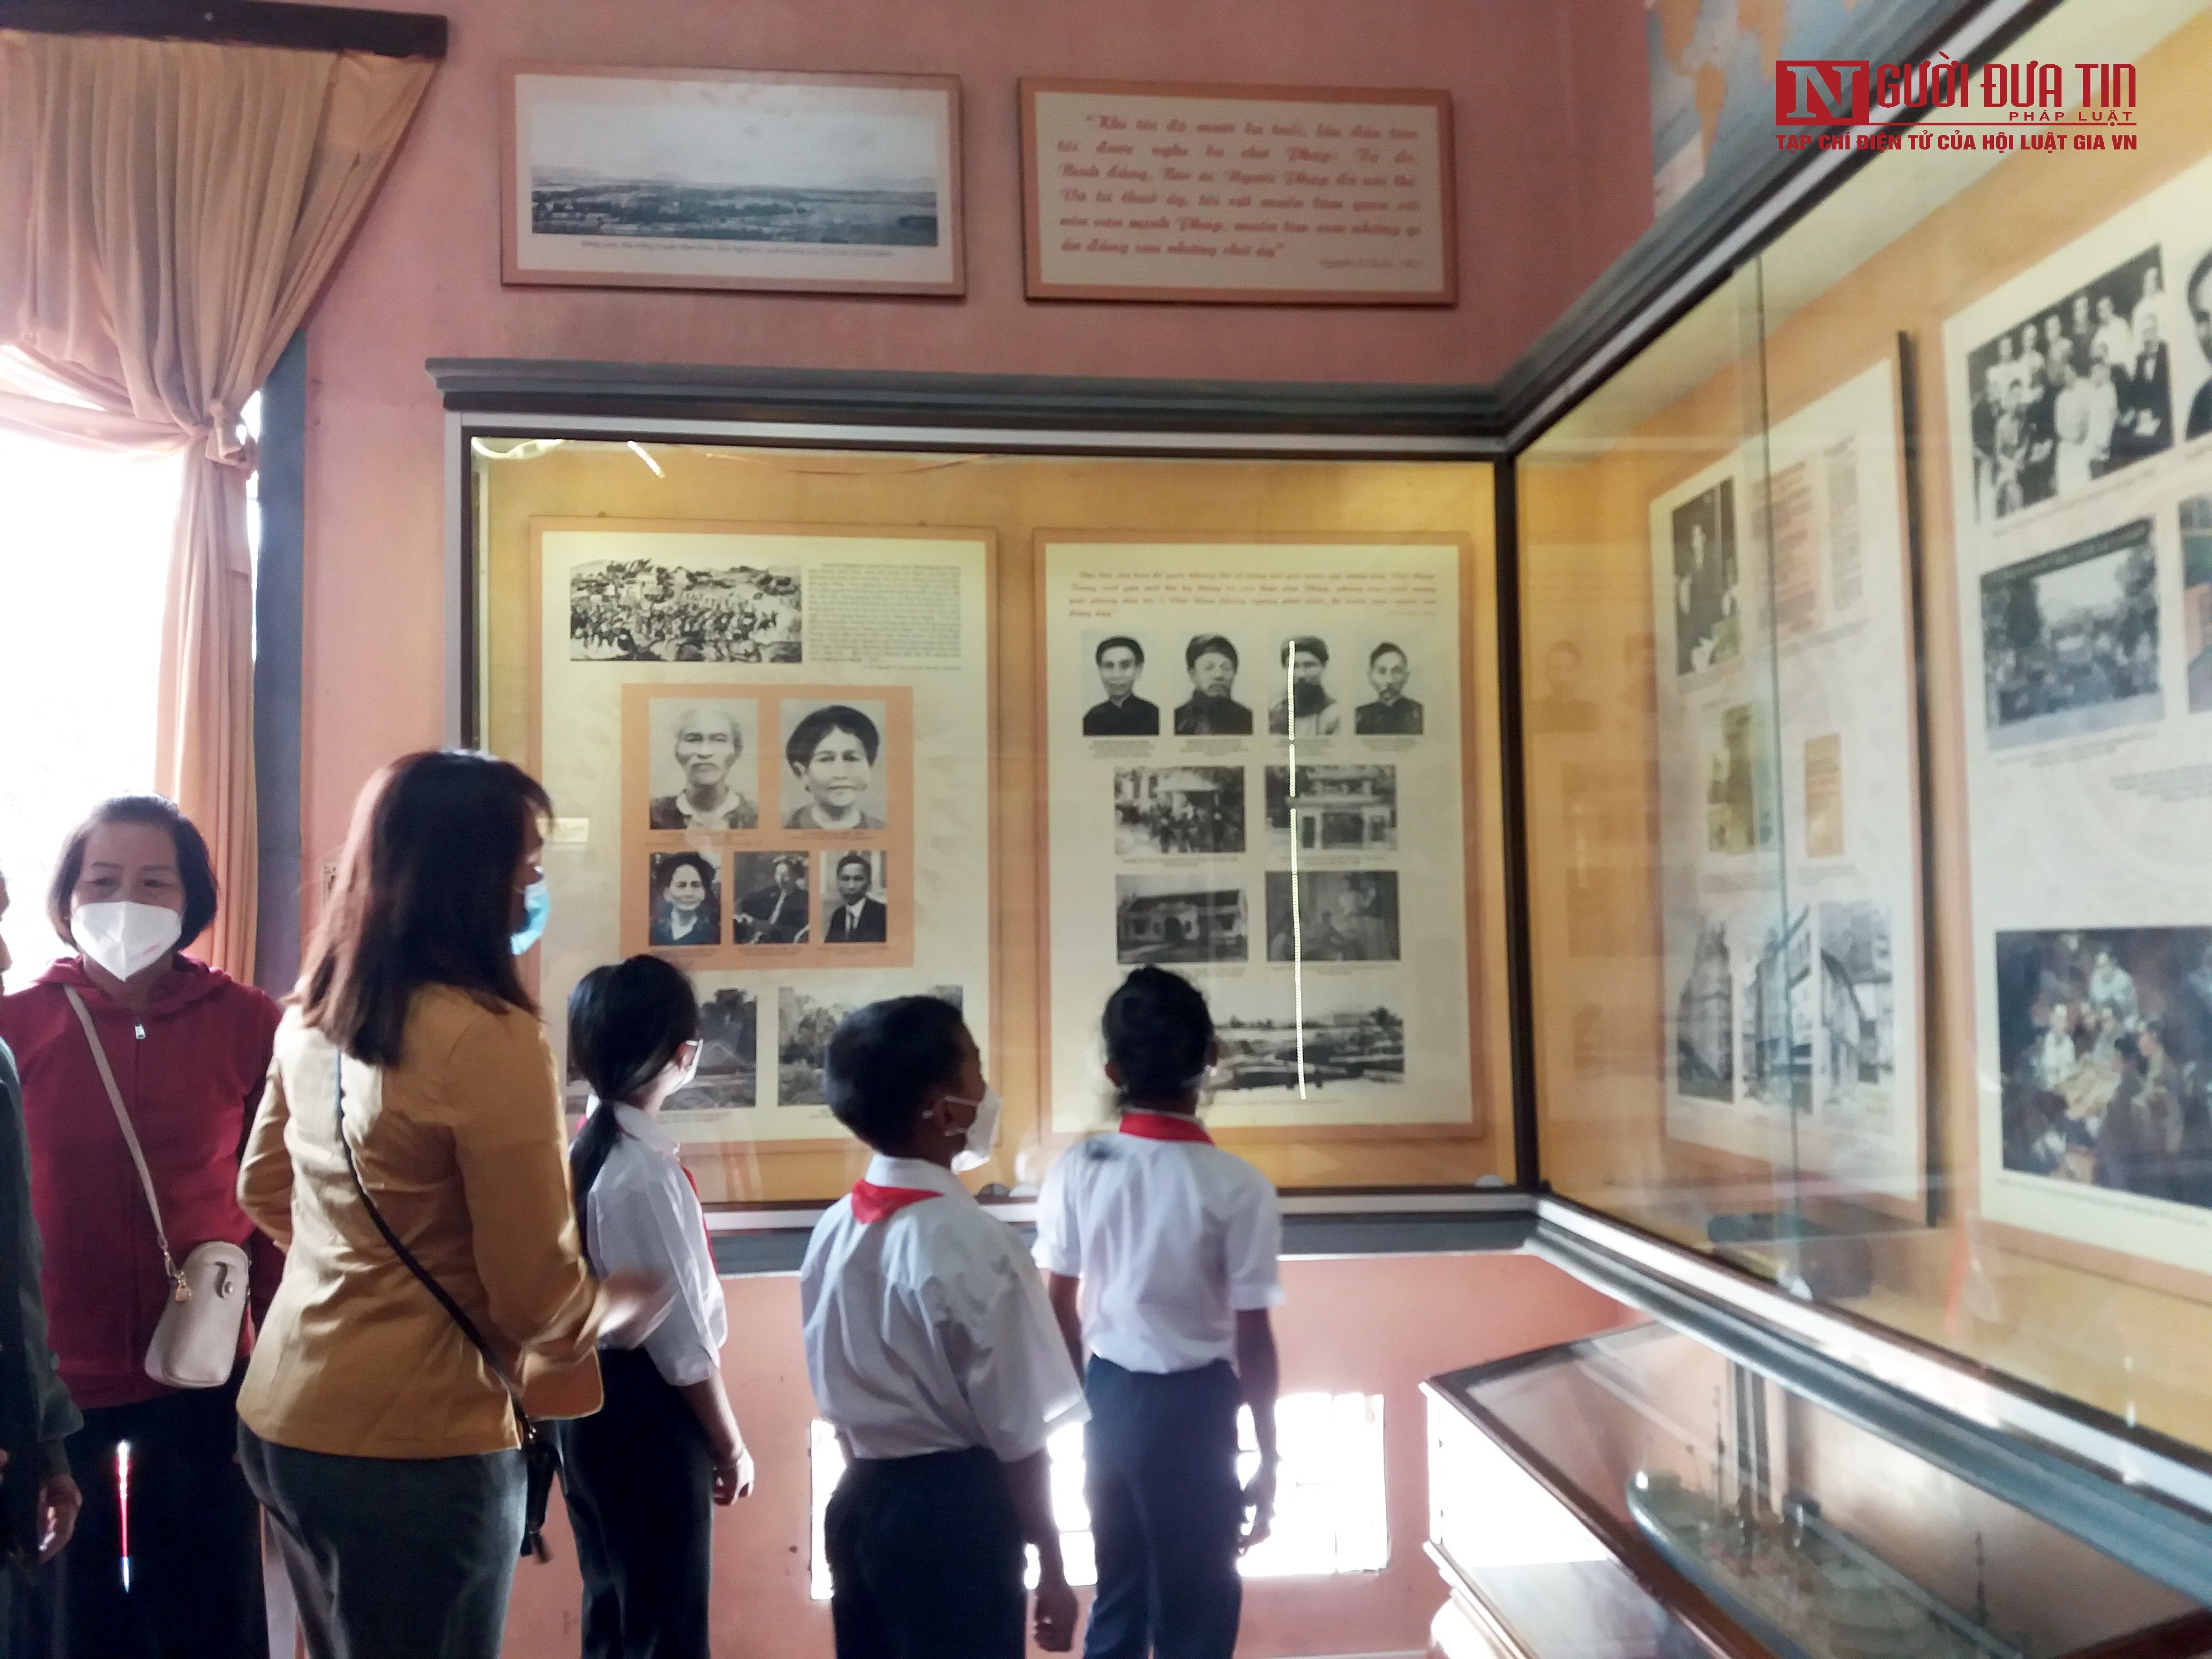 Văn hoá - Đến thăm “Bảo tàng Hồ Chí Minh thu nhỏ” giữa lòng phố biển Nha Trang (Hình 6).